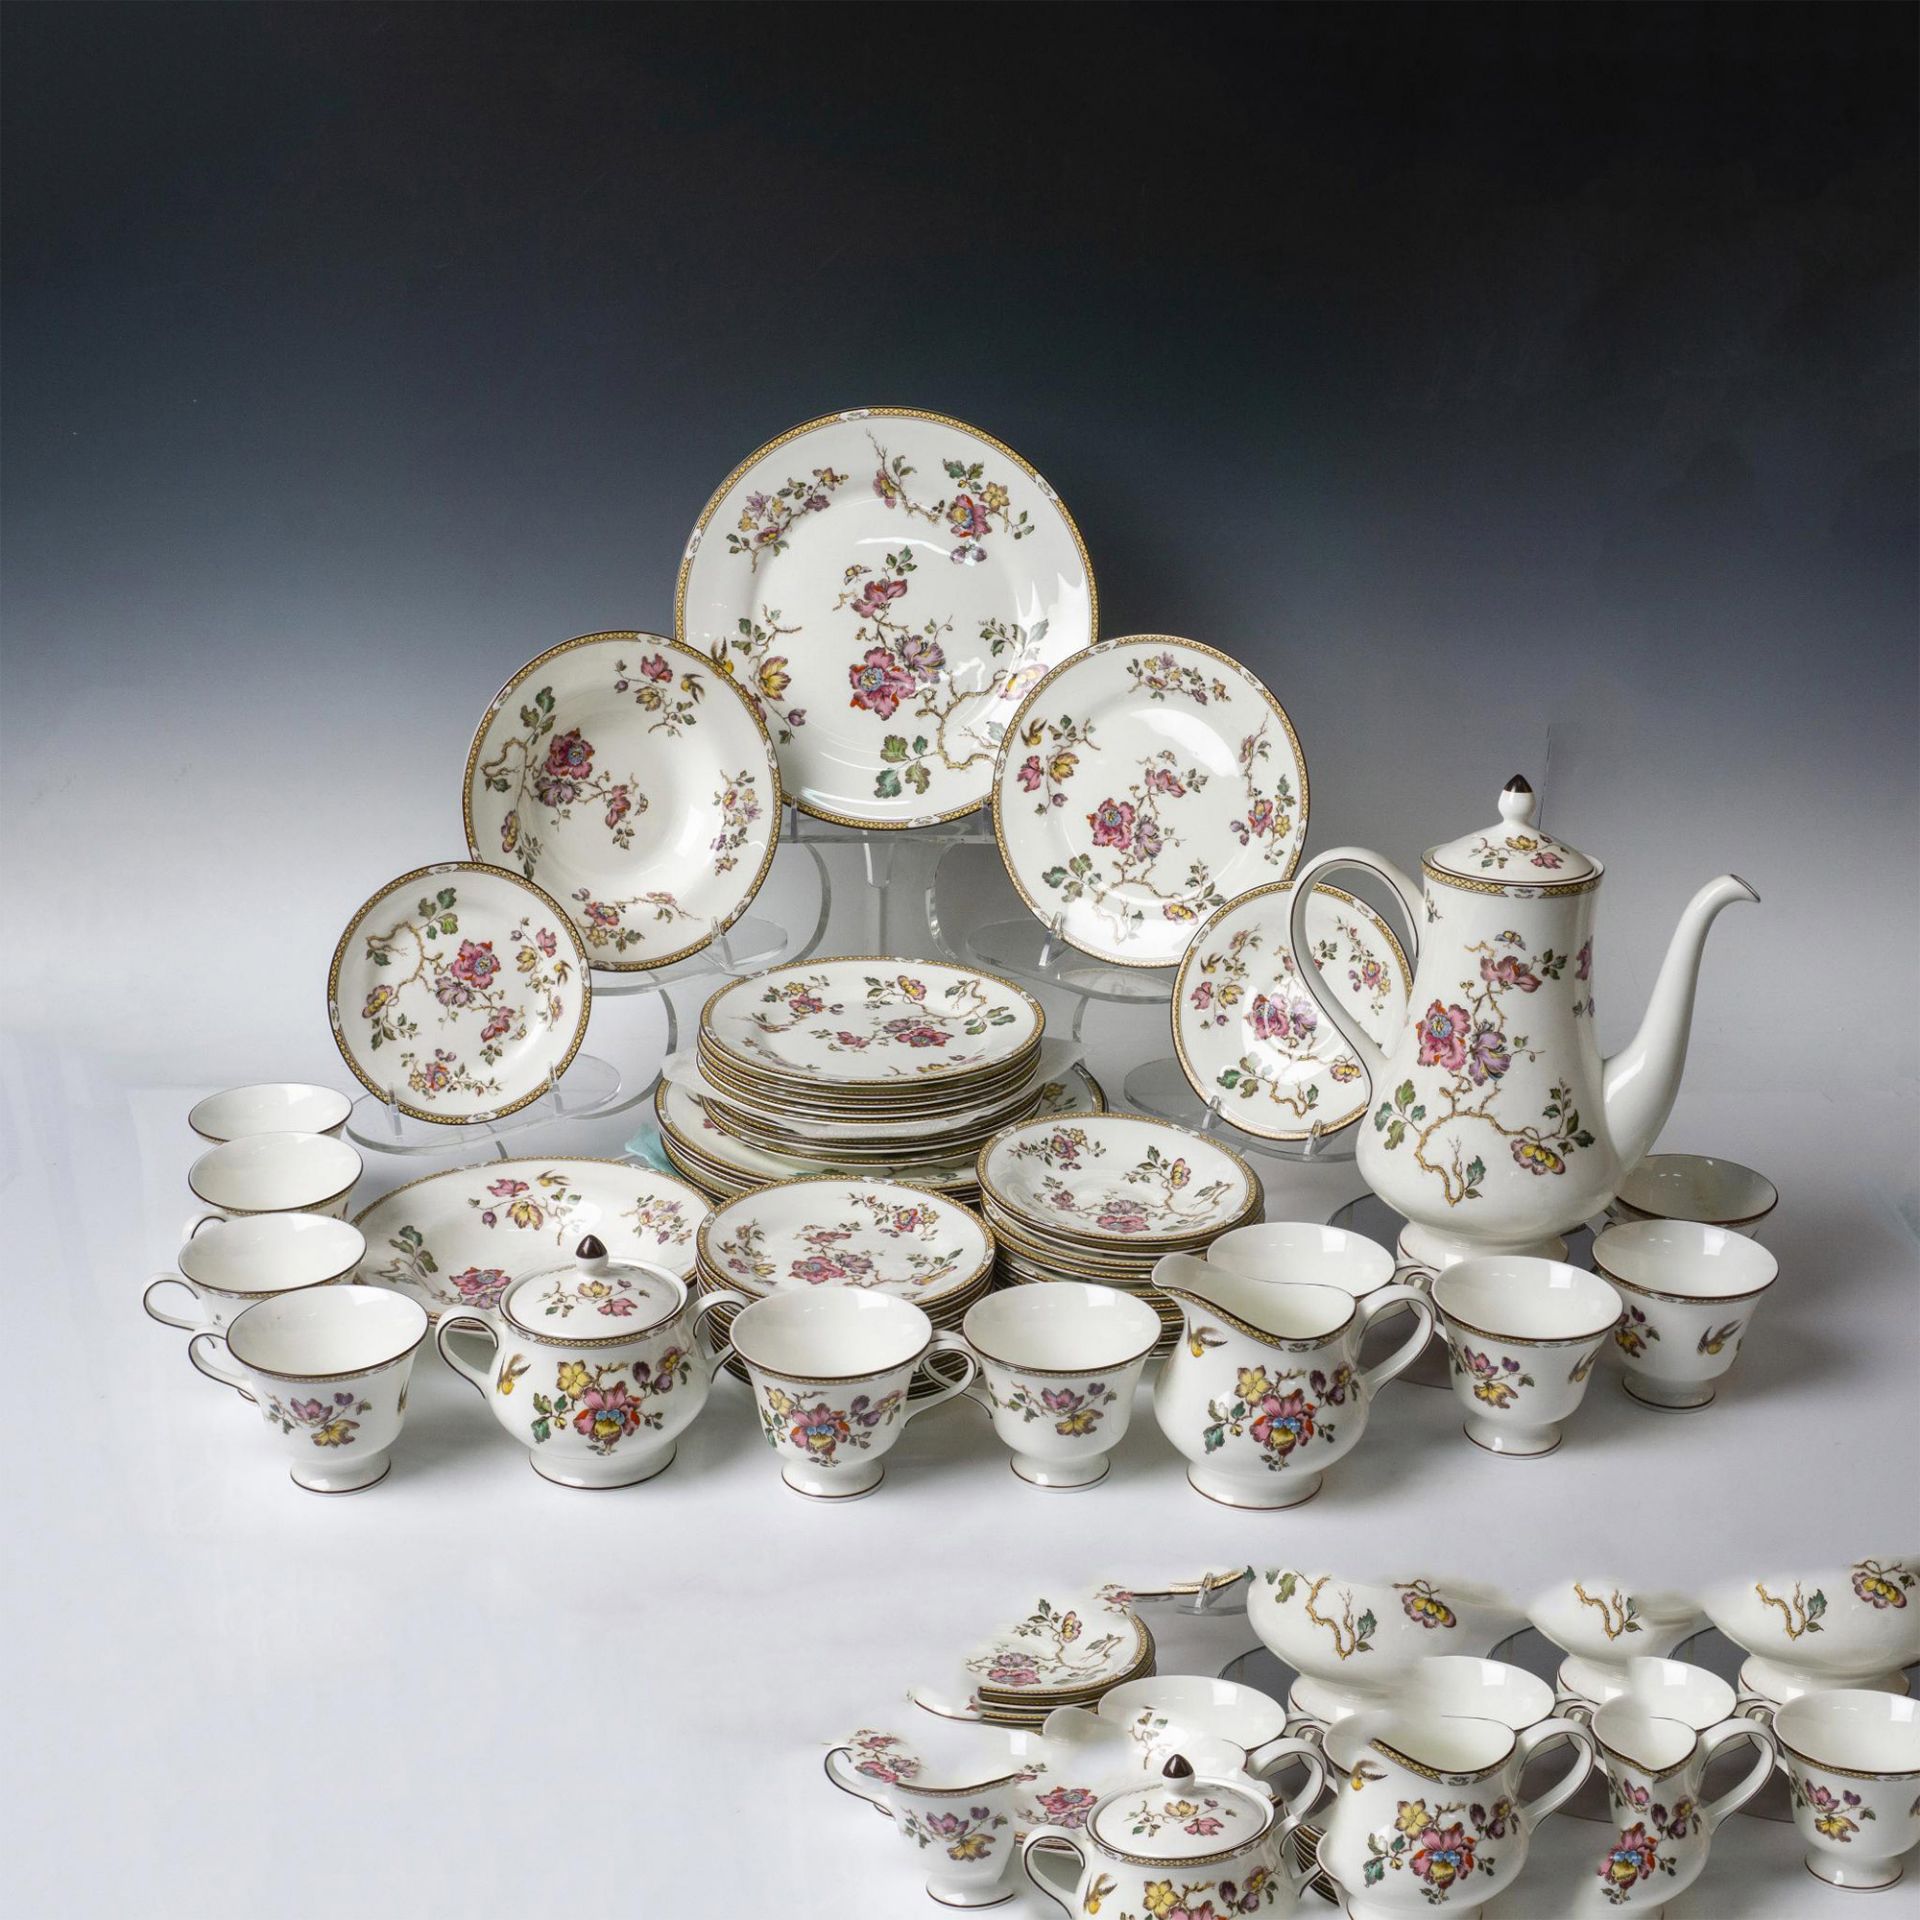 48pc Wedgwood Porcelain China Set, Swallow - Image 2 of 8